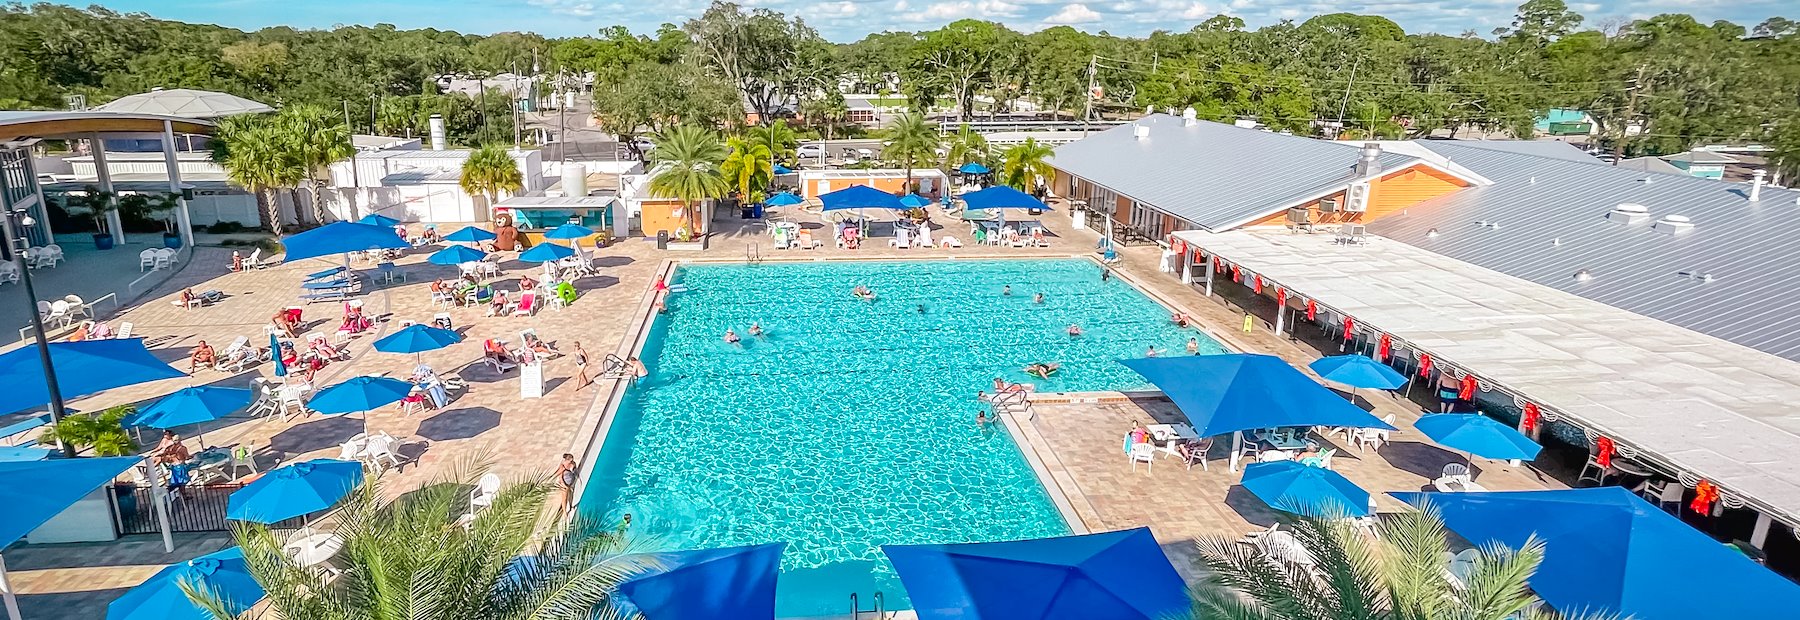 Sun Outdoors Sarasota RV Resort